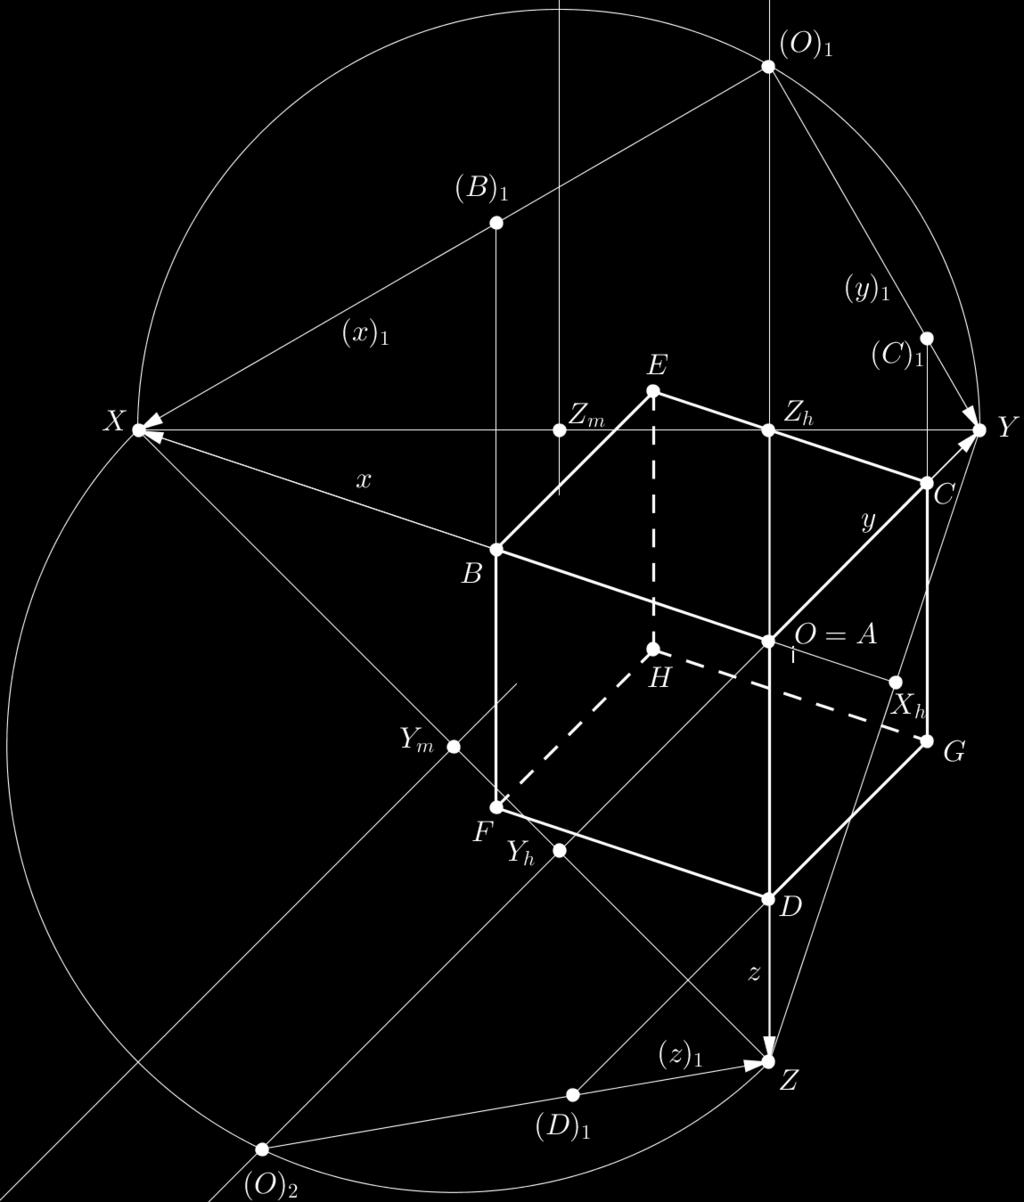 CAPÍTULO 4. PERSPECTIVA 105 4. O ponto A (a projeção em π 0 de (A)) coincide com O. O ponto B é a interseção do eixo x com a paralela a O(O) 1 passando por (B) 1.